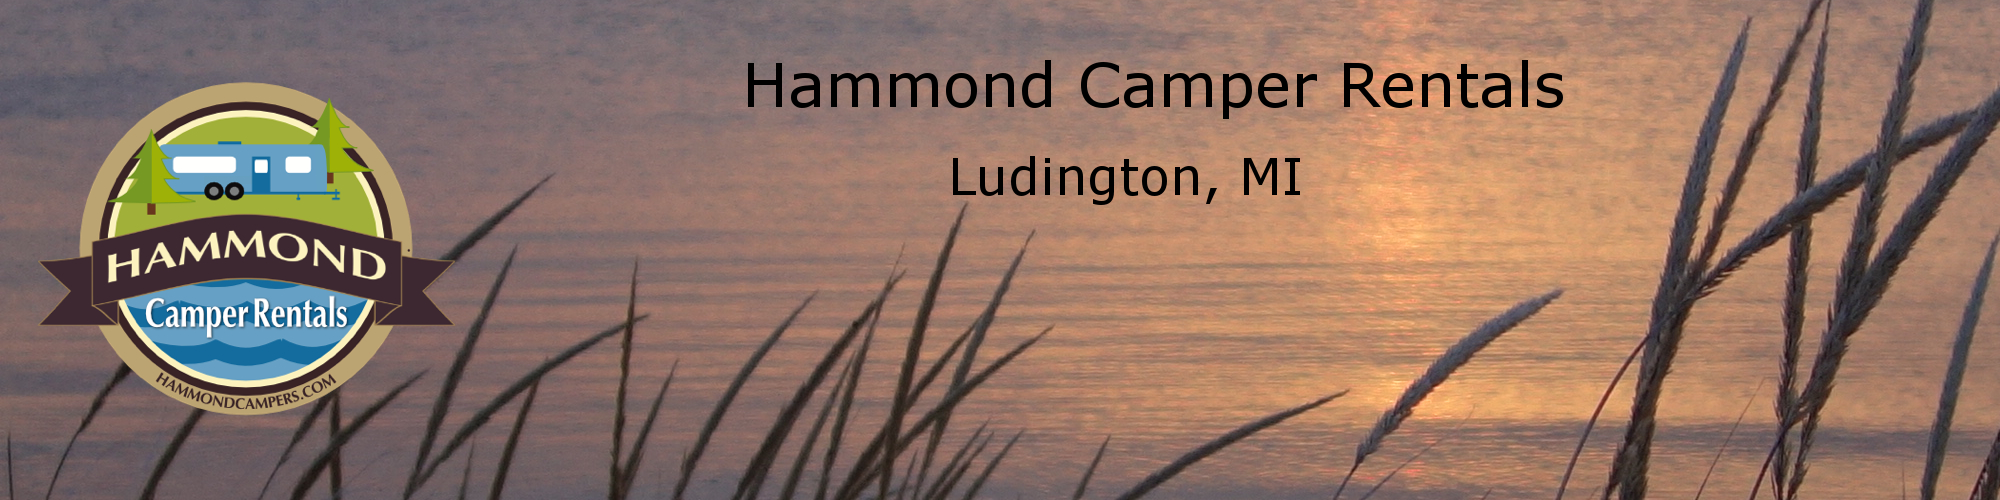 Hammond Camper Rentals